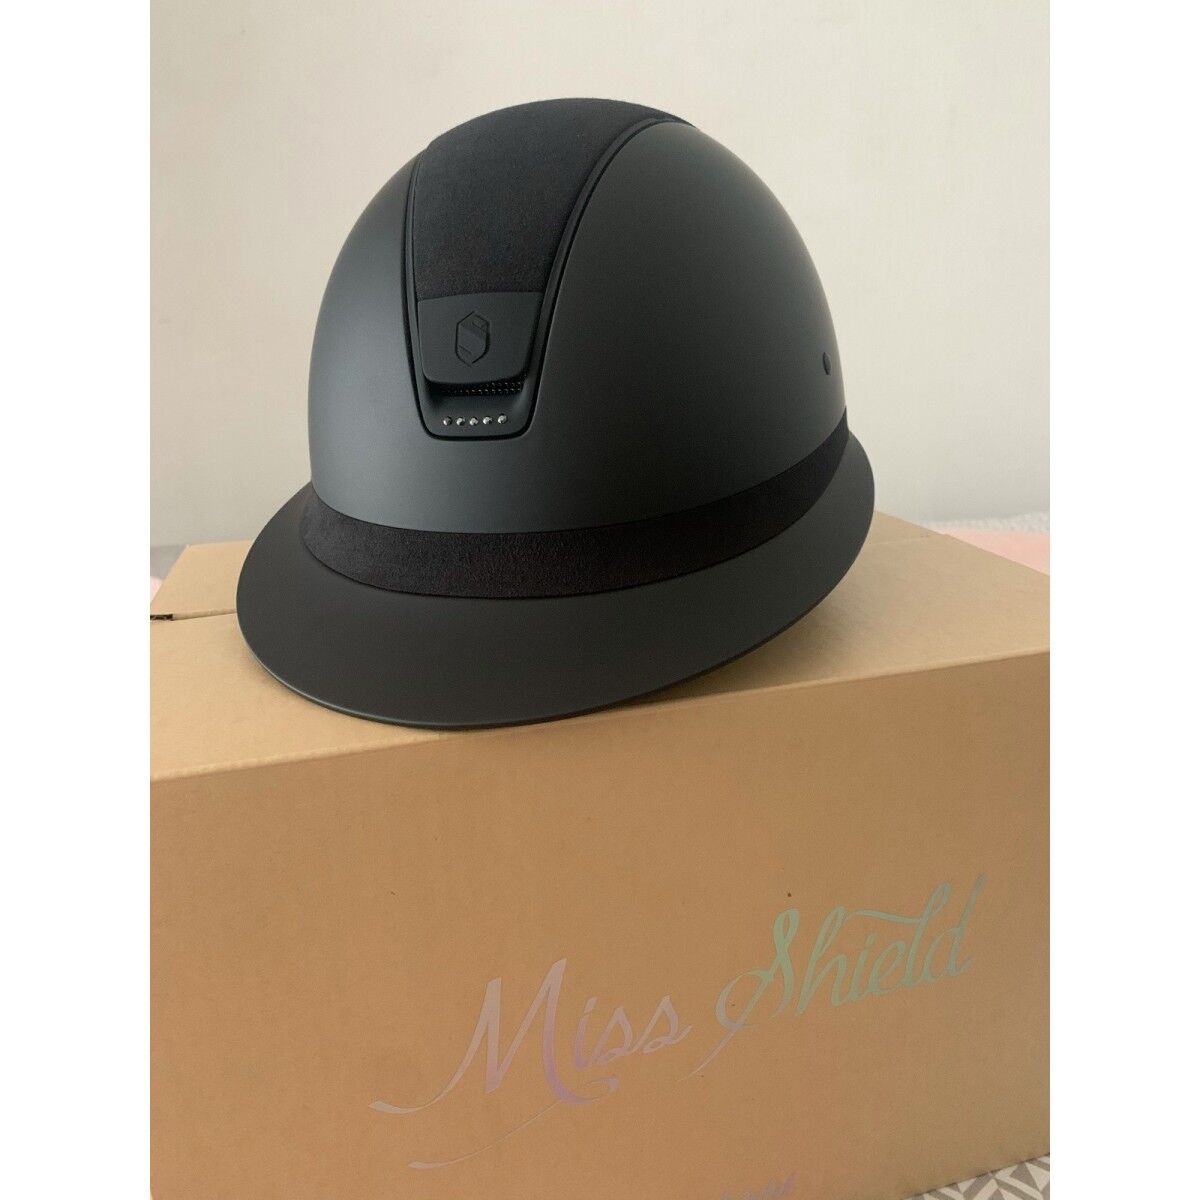 Samshield - Sac pour casque Luxury noir